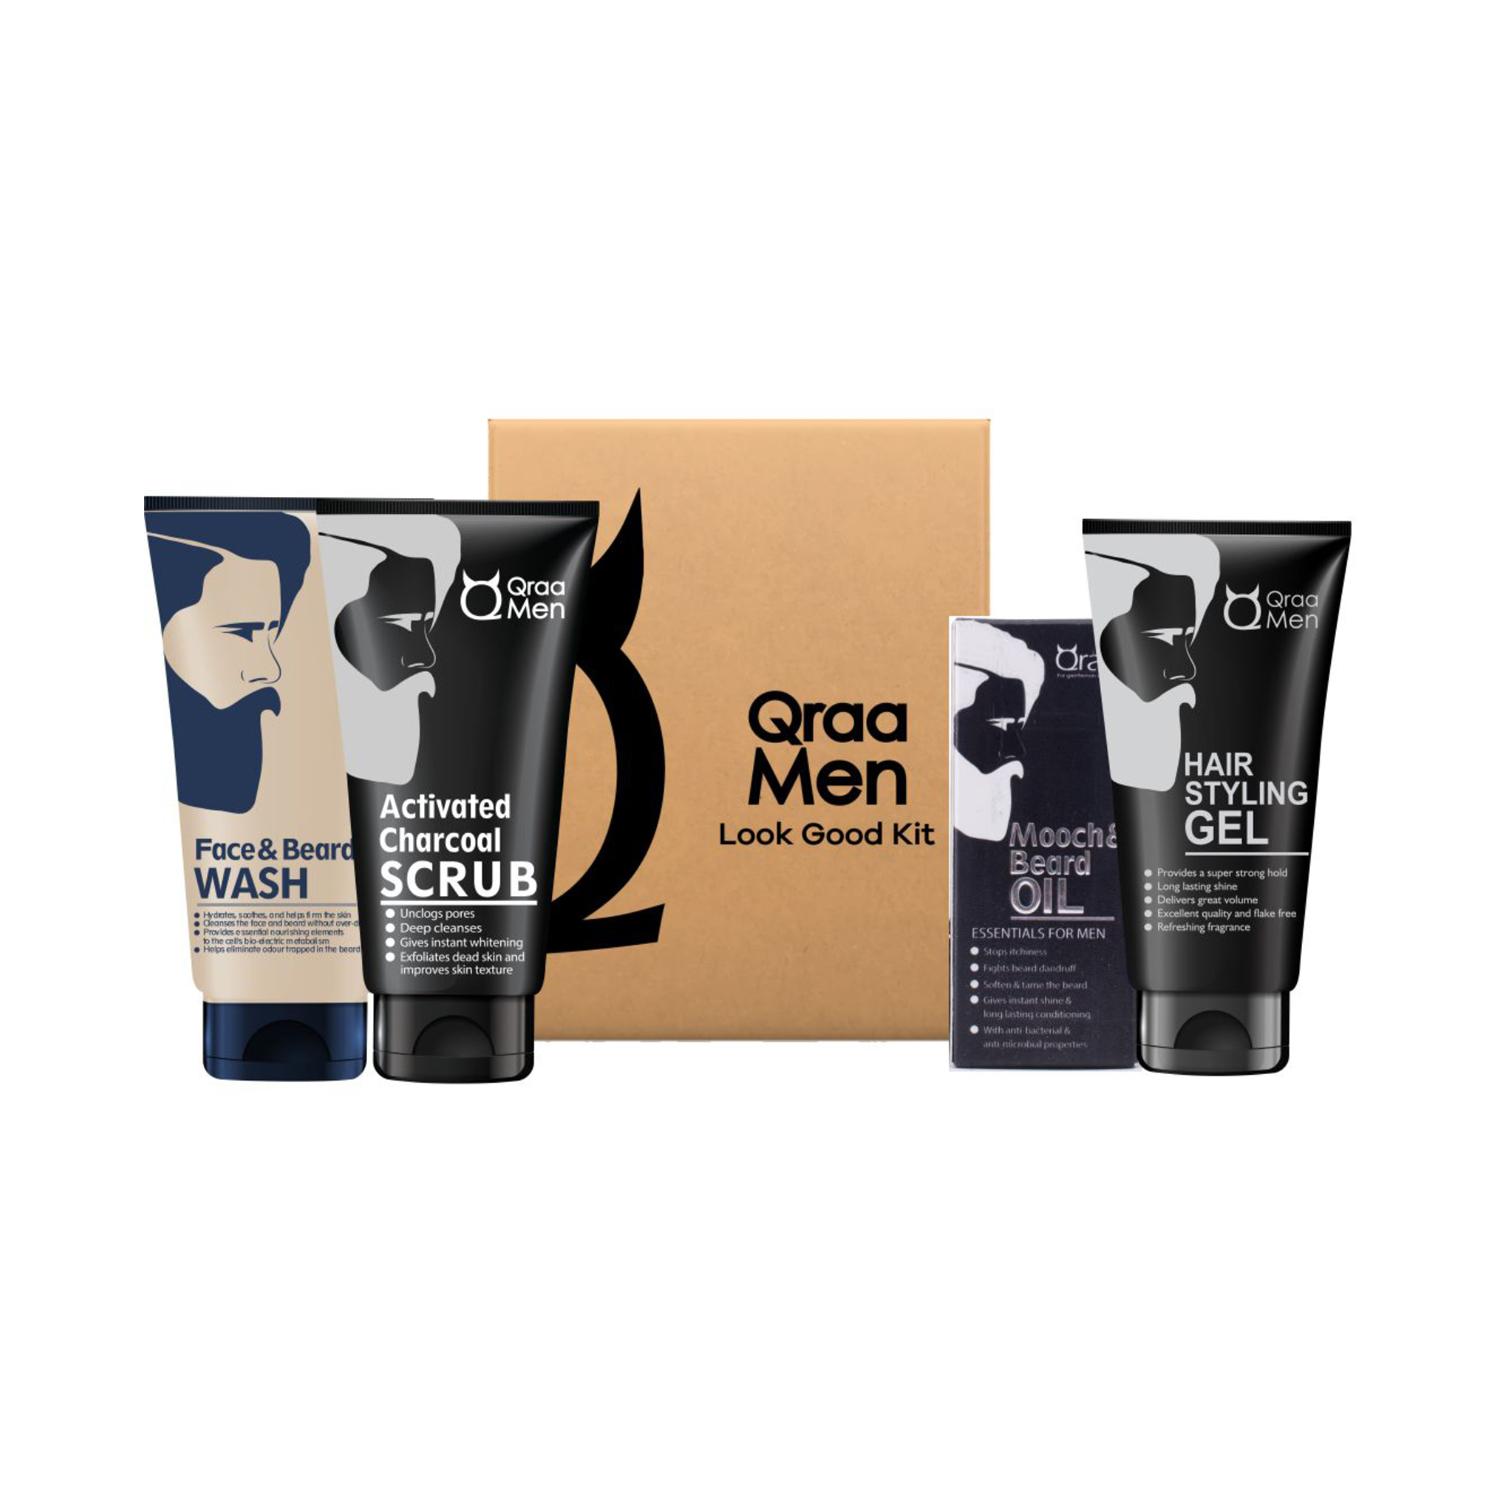 Qraamen | Qraamen Look Good Kit with Face Wash Styling Gel Scrub & Beard Oil Premium Gift Box (4 pcs)